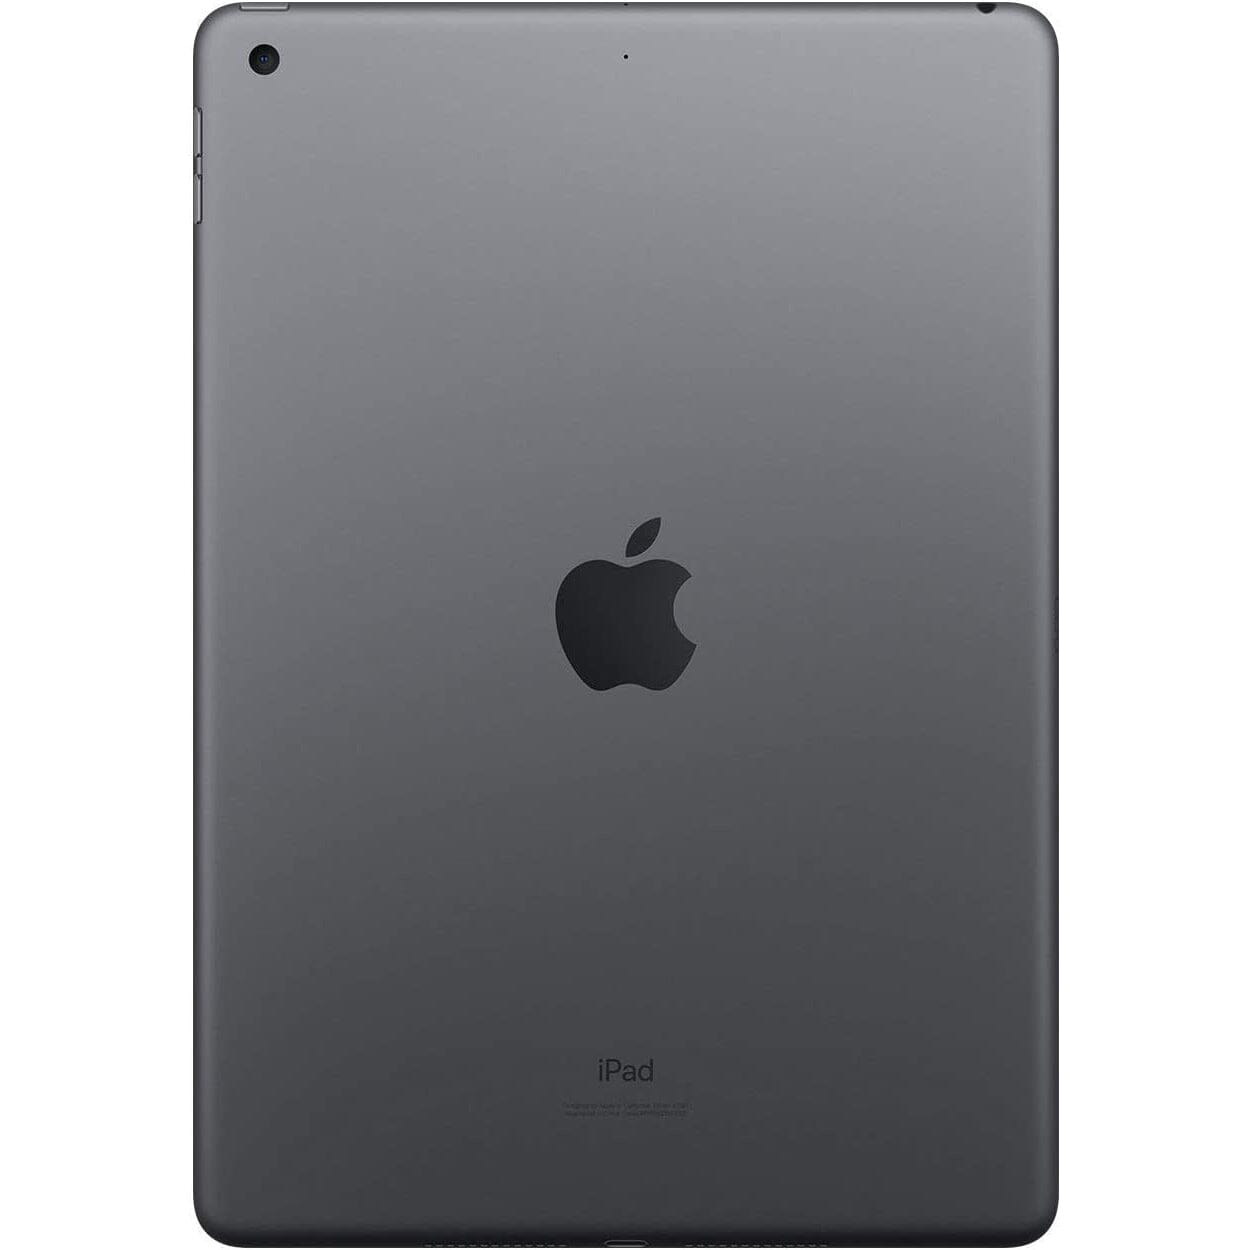 Apple iPad 7 32GB Wifi Space Gray (Refurbished)